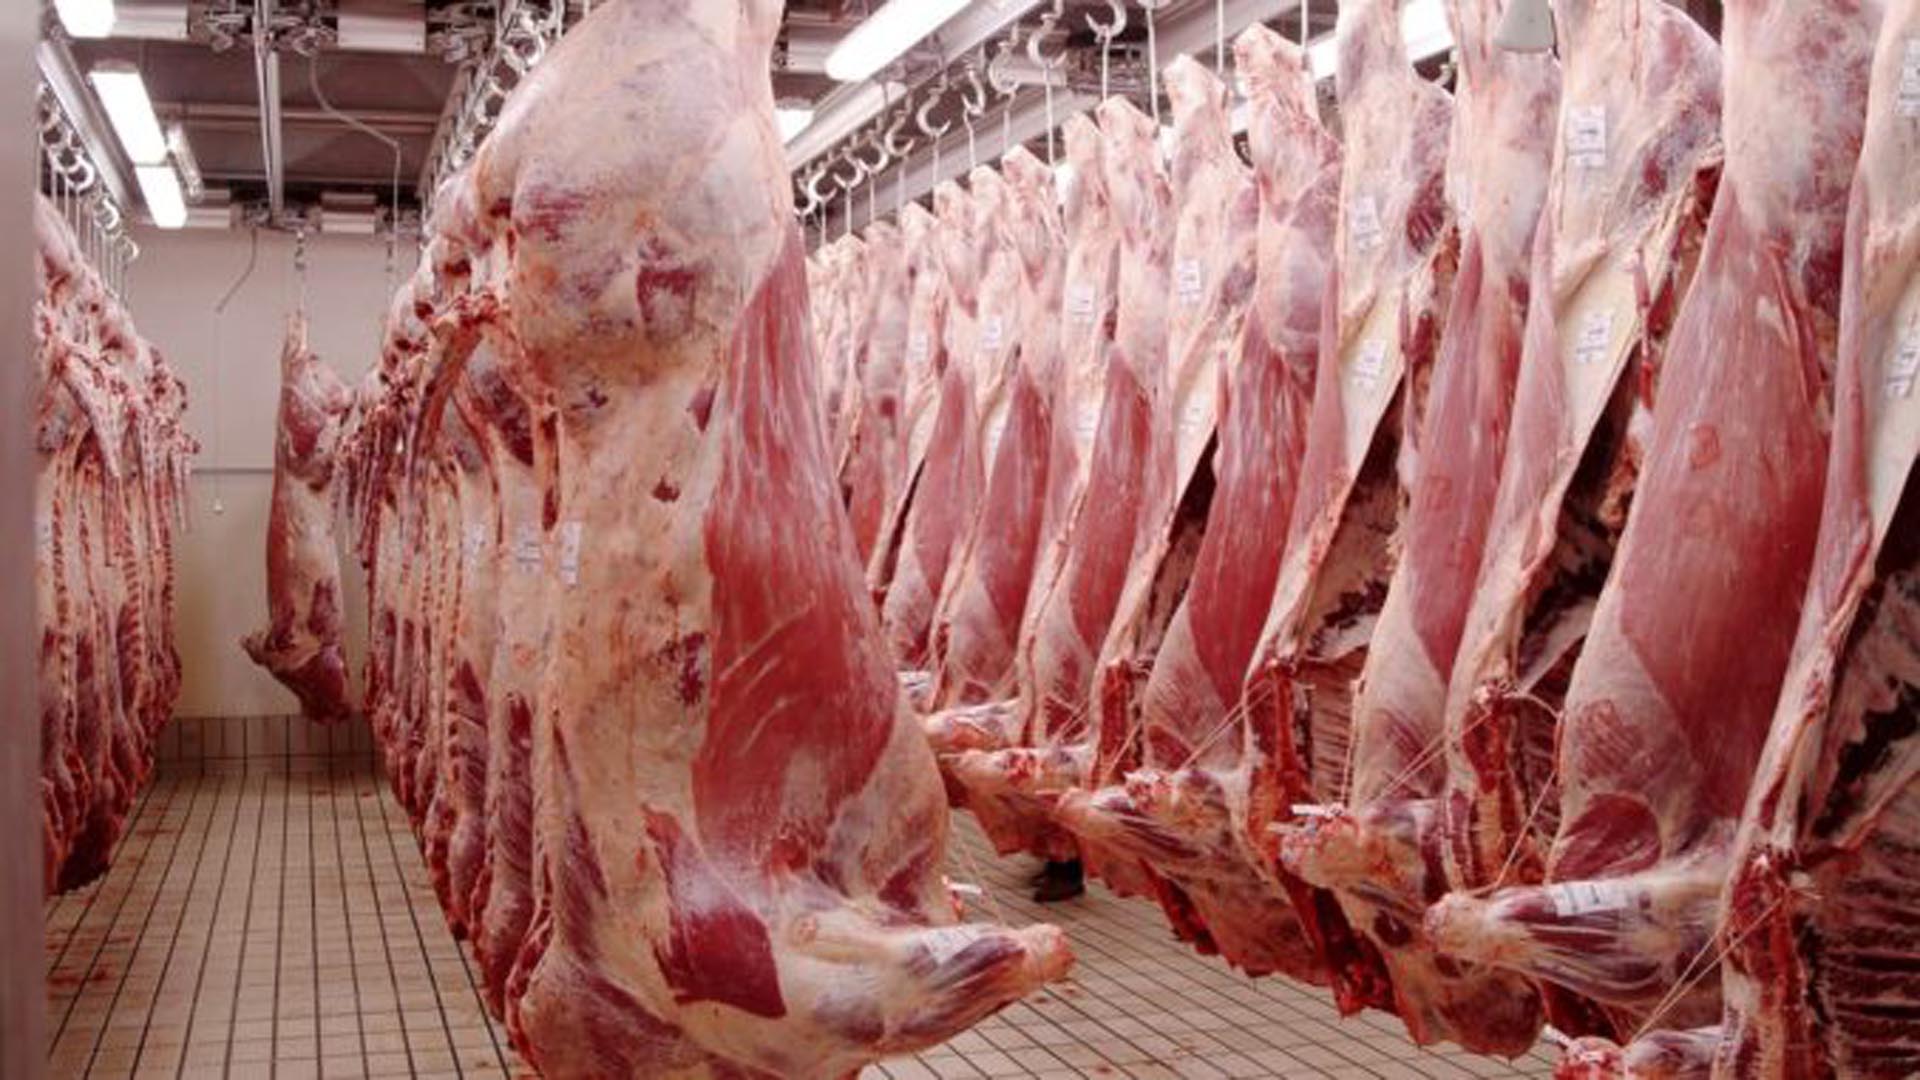 La Aduana estableció valores de referencia para la exportación de carne vacuna a siete países asiáticos